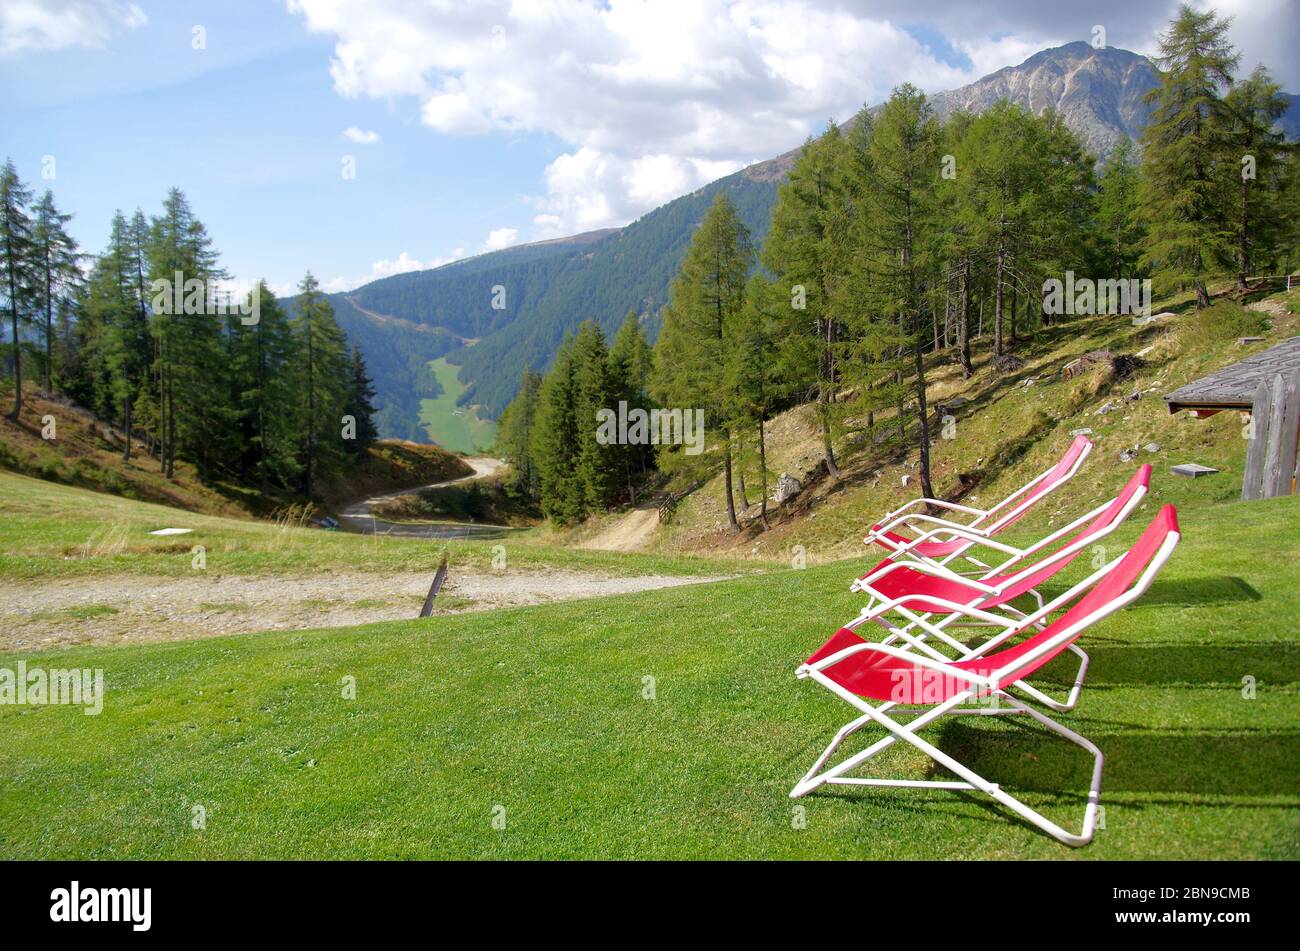 Rote Liegestühle zum Ausruhen Wanderer und bewundern Sie die hohen Berge mit grünen Wiesen und üppigen Wäldern und scharfen Felsen unter dem blauen Himmel Stockfoto